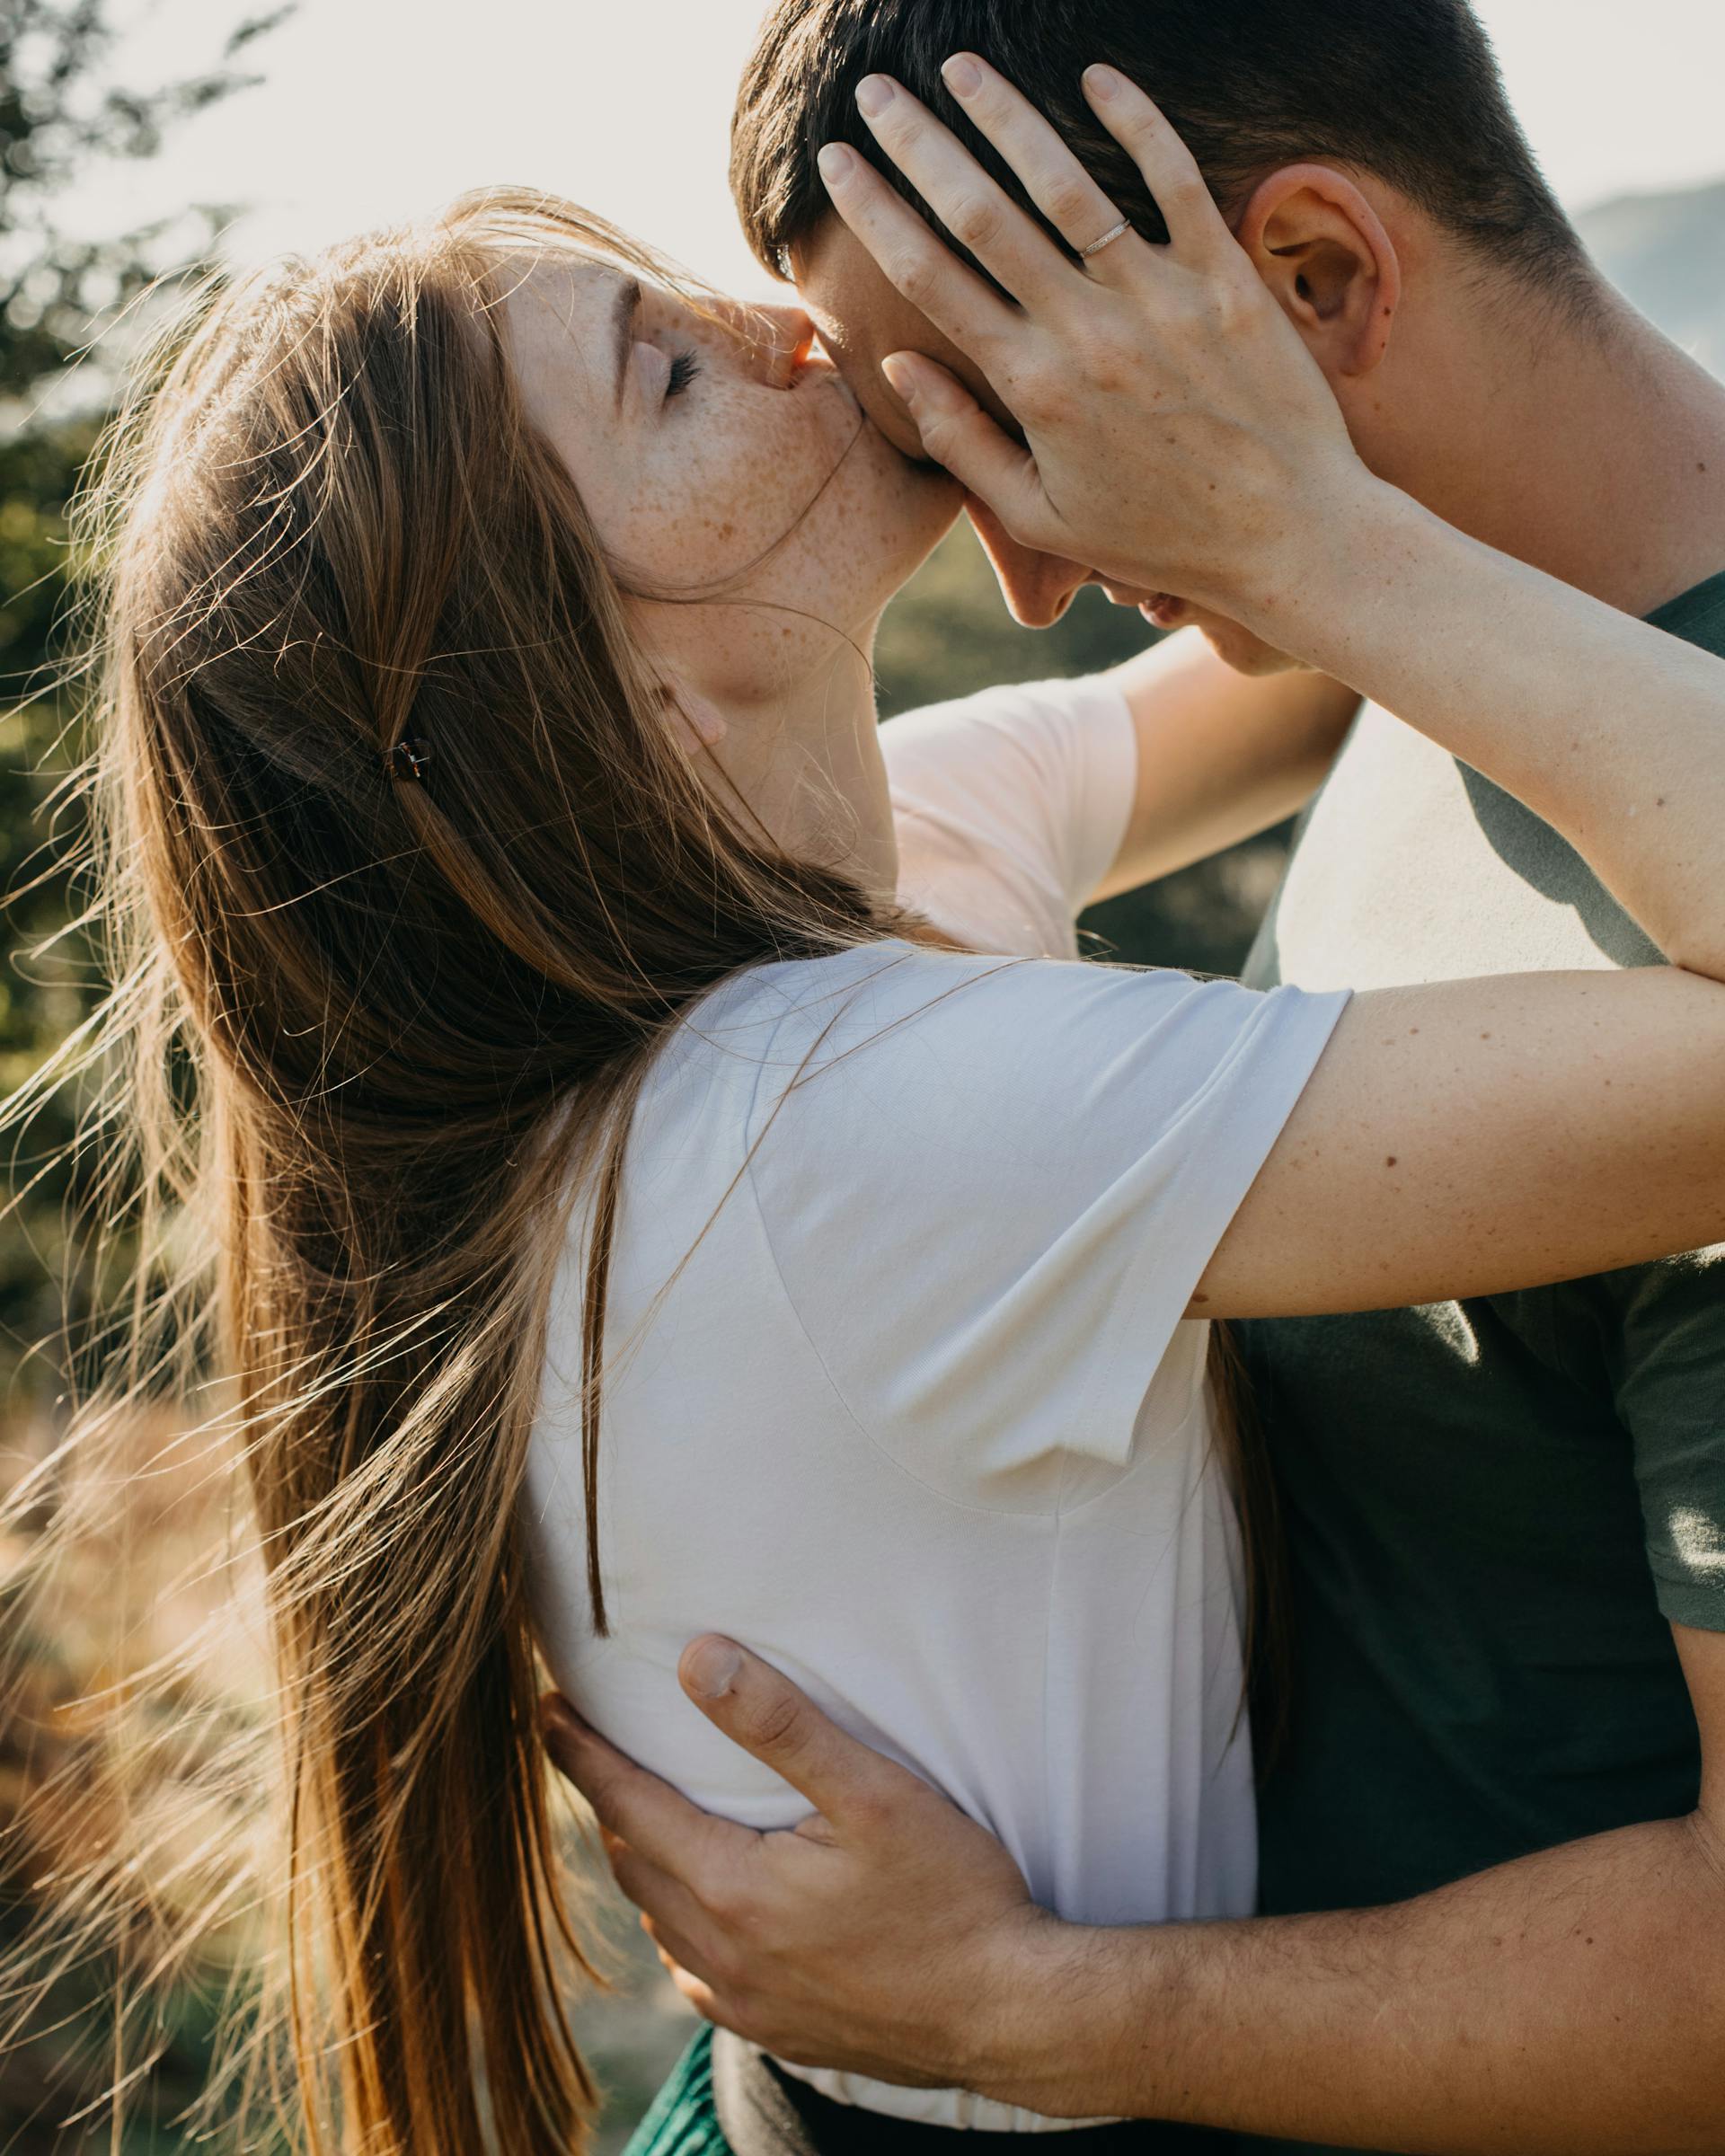 Una pareja besando a su novio en la frente | Fuente: Pexels